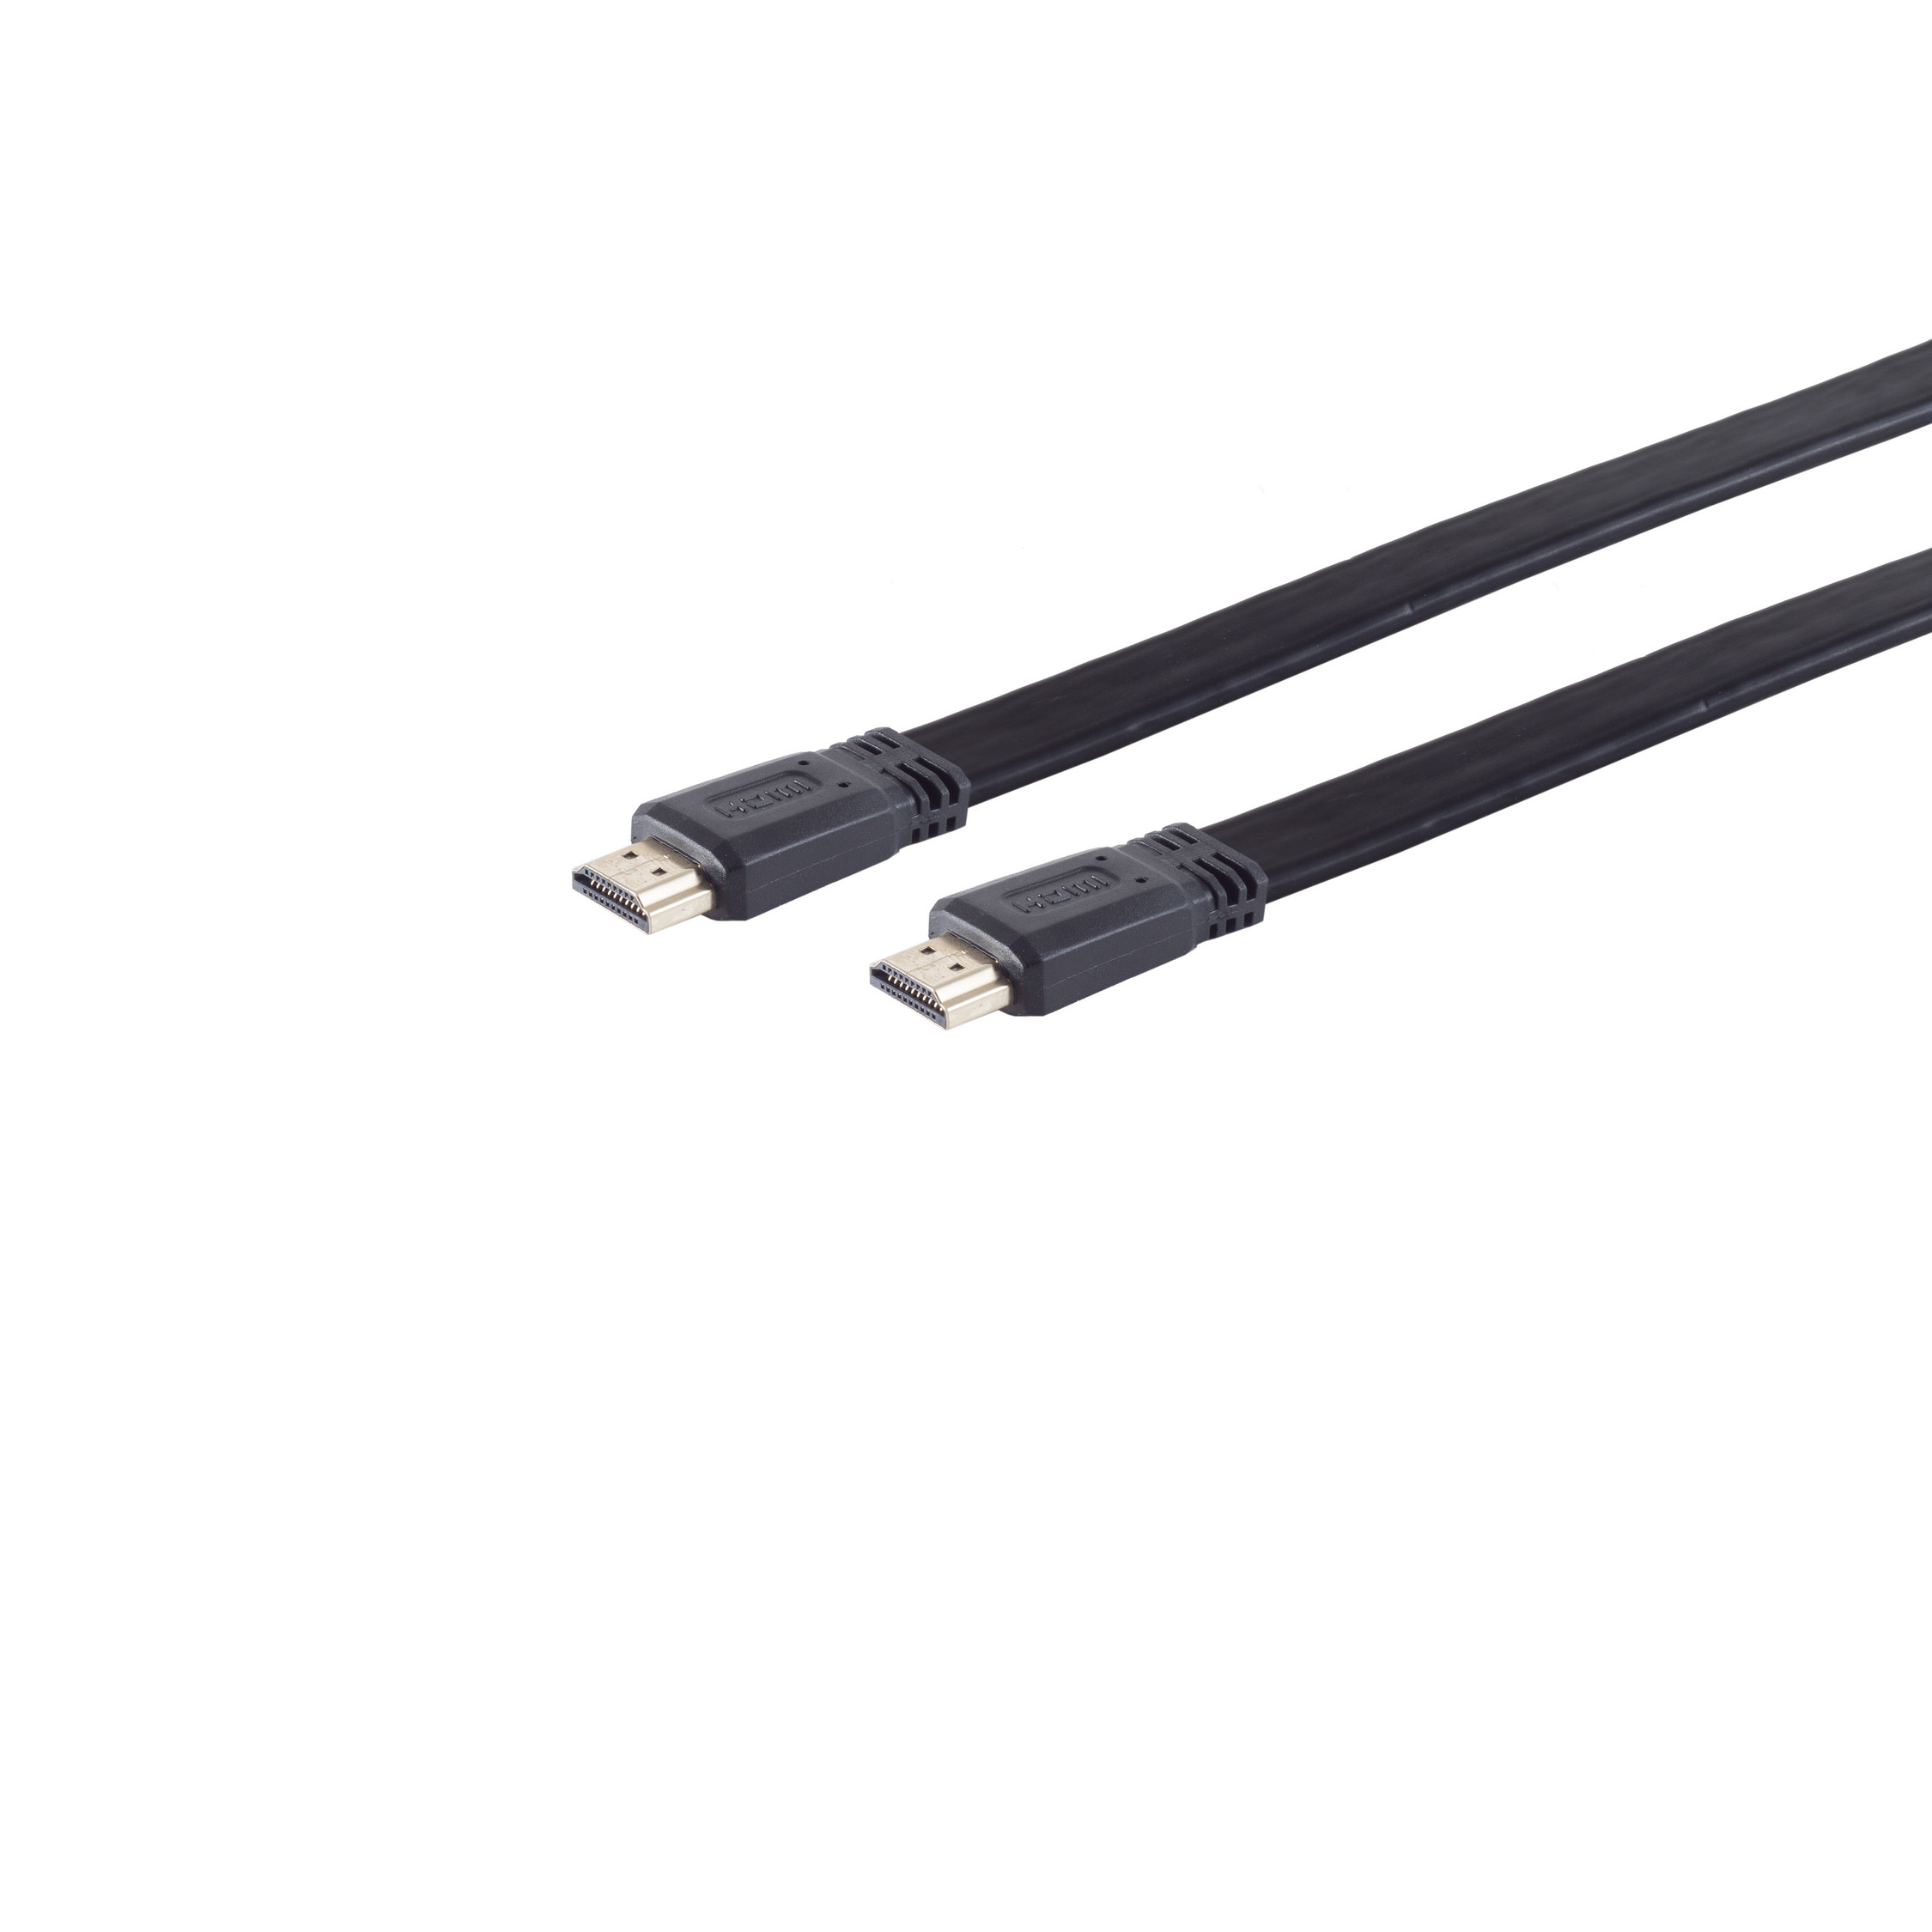 2m A-St. / HDMI CONNECTIVITY A-St HDMI verg. Kabel HDMI S/CONN FLACH MAXIMUM HEAC